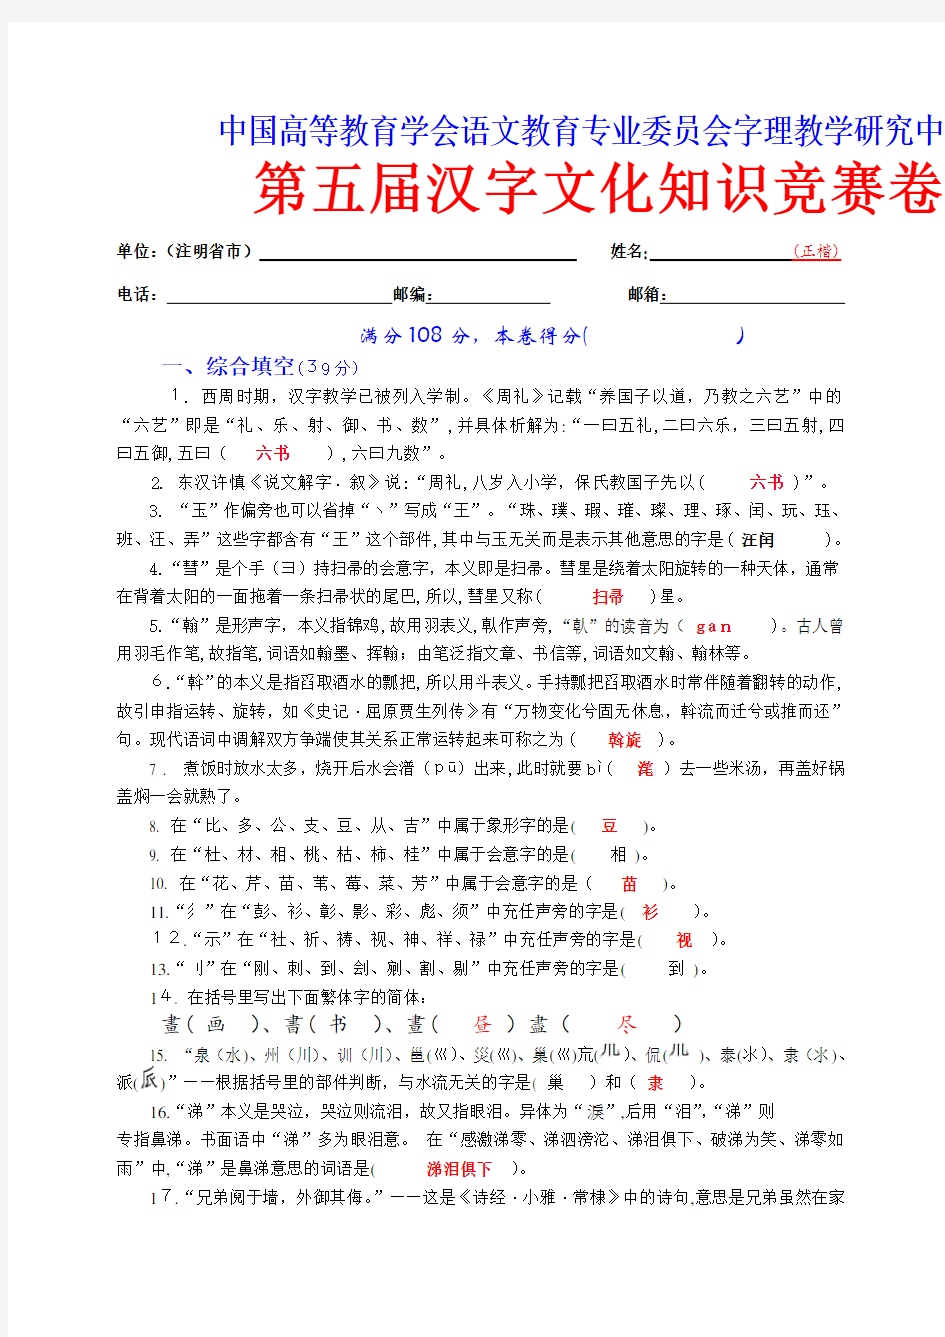 全国第五届汉字知识竞赛卷及标准答案(8K卷)